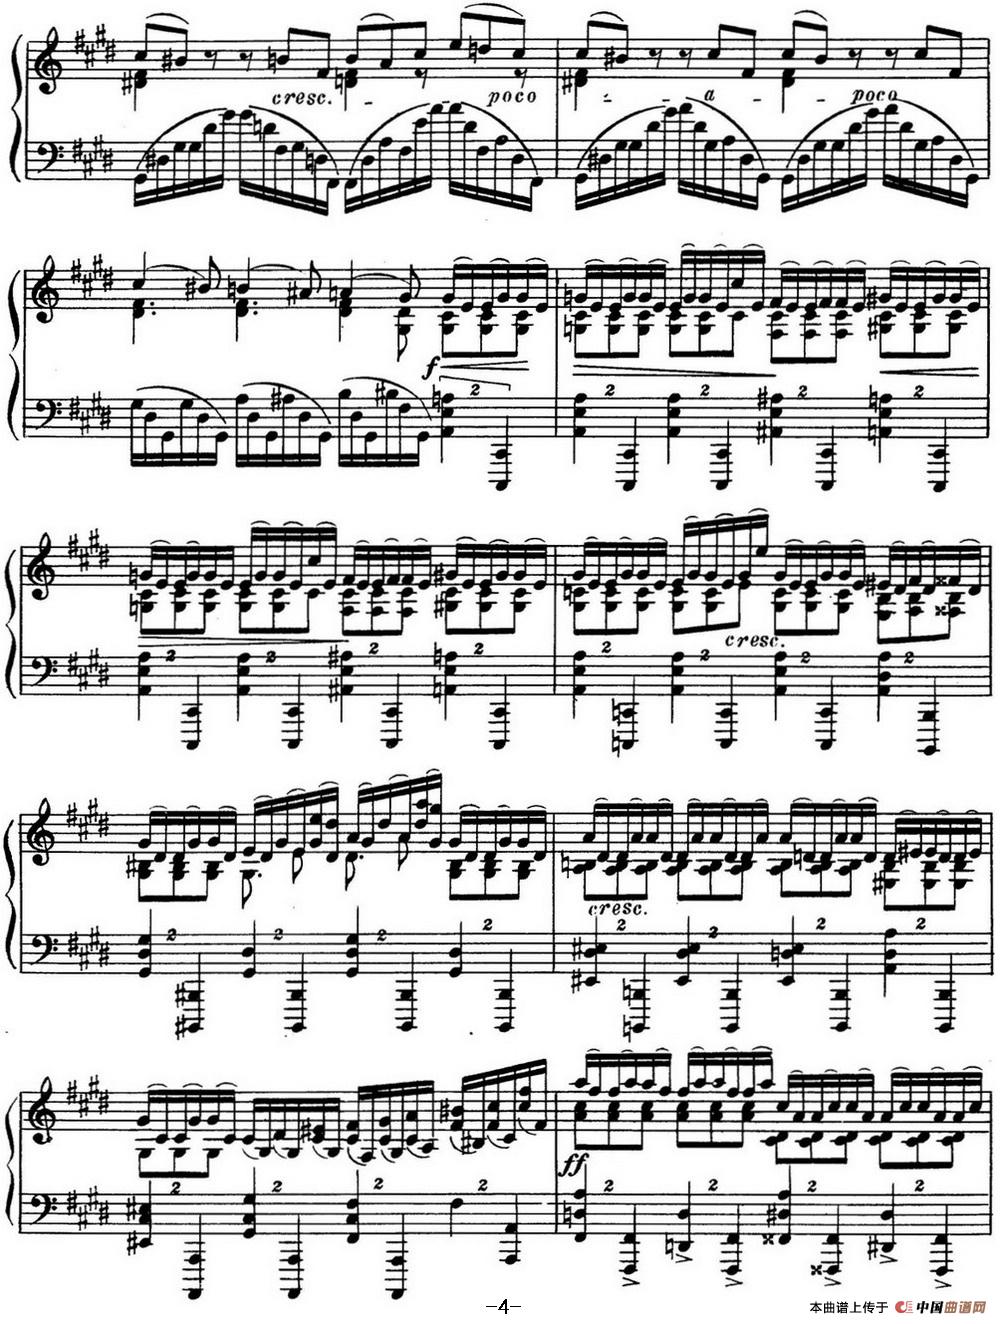 钢琴谱：斯克里亚宾 钢琴练习曲 Op.42 No.5 Alexander Scriabin Etudes